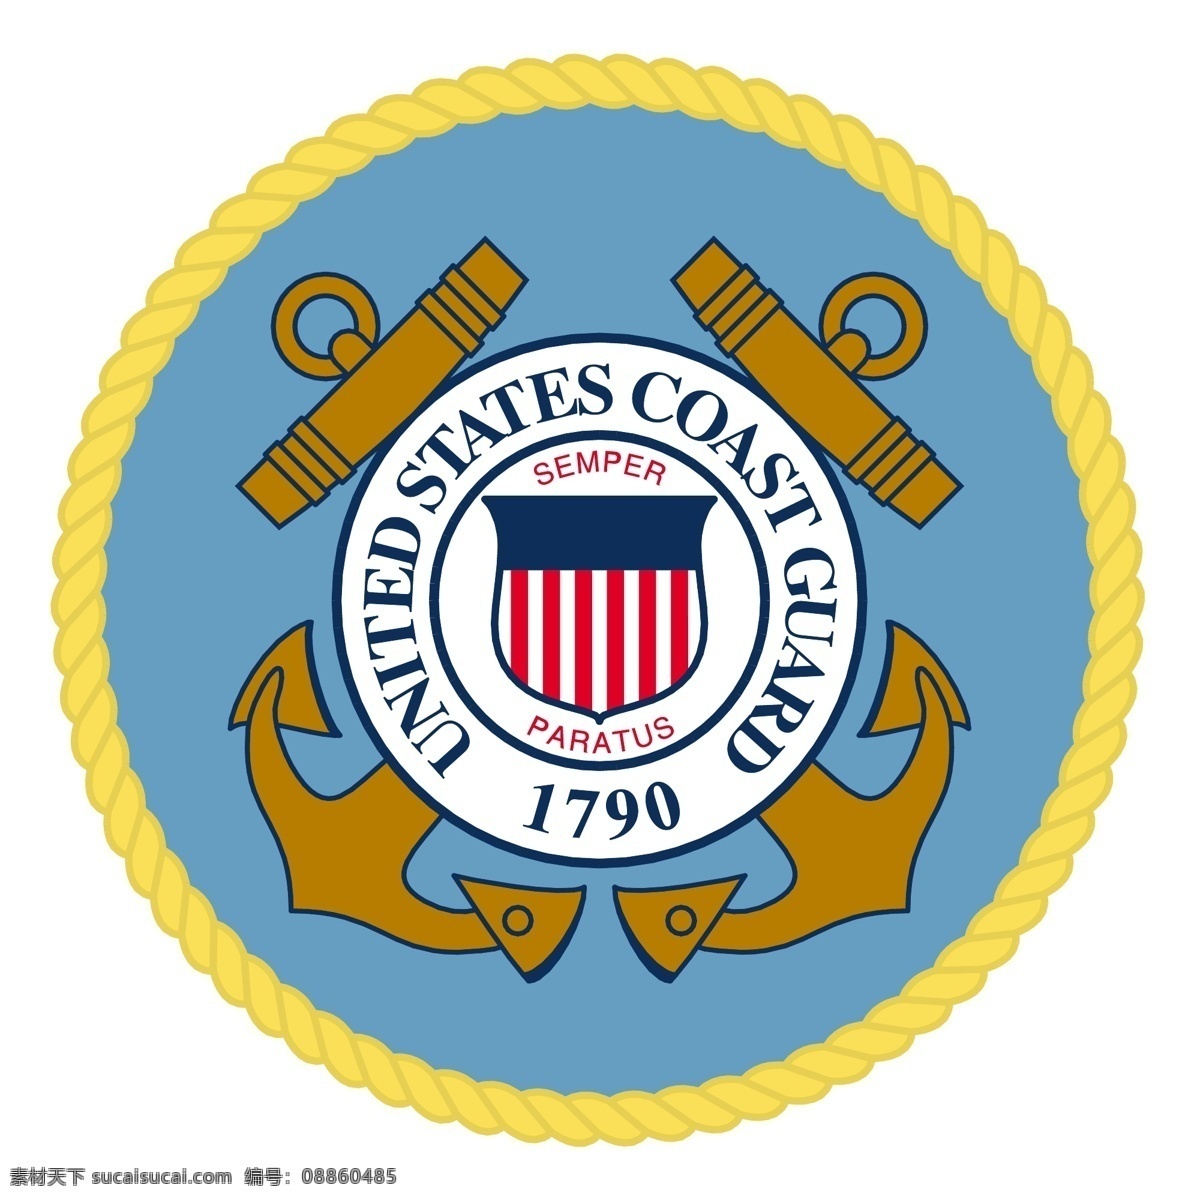 美国 海岸 警卫队 免费 标志 psd源文件 logo设计